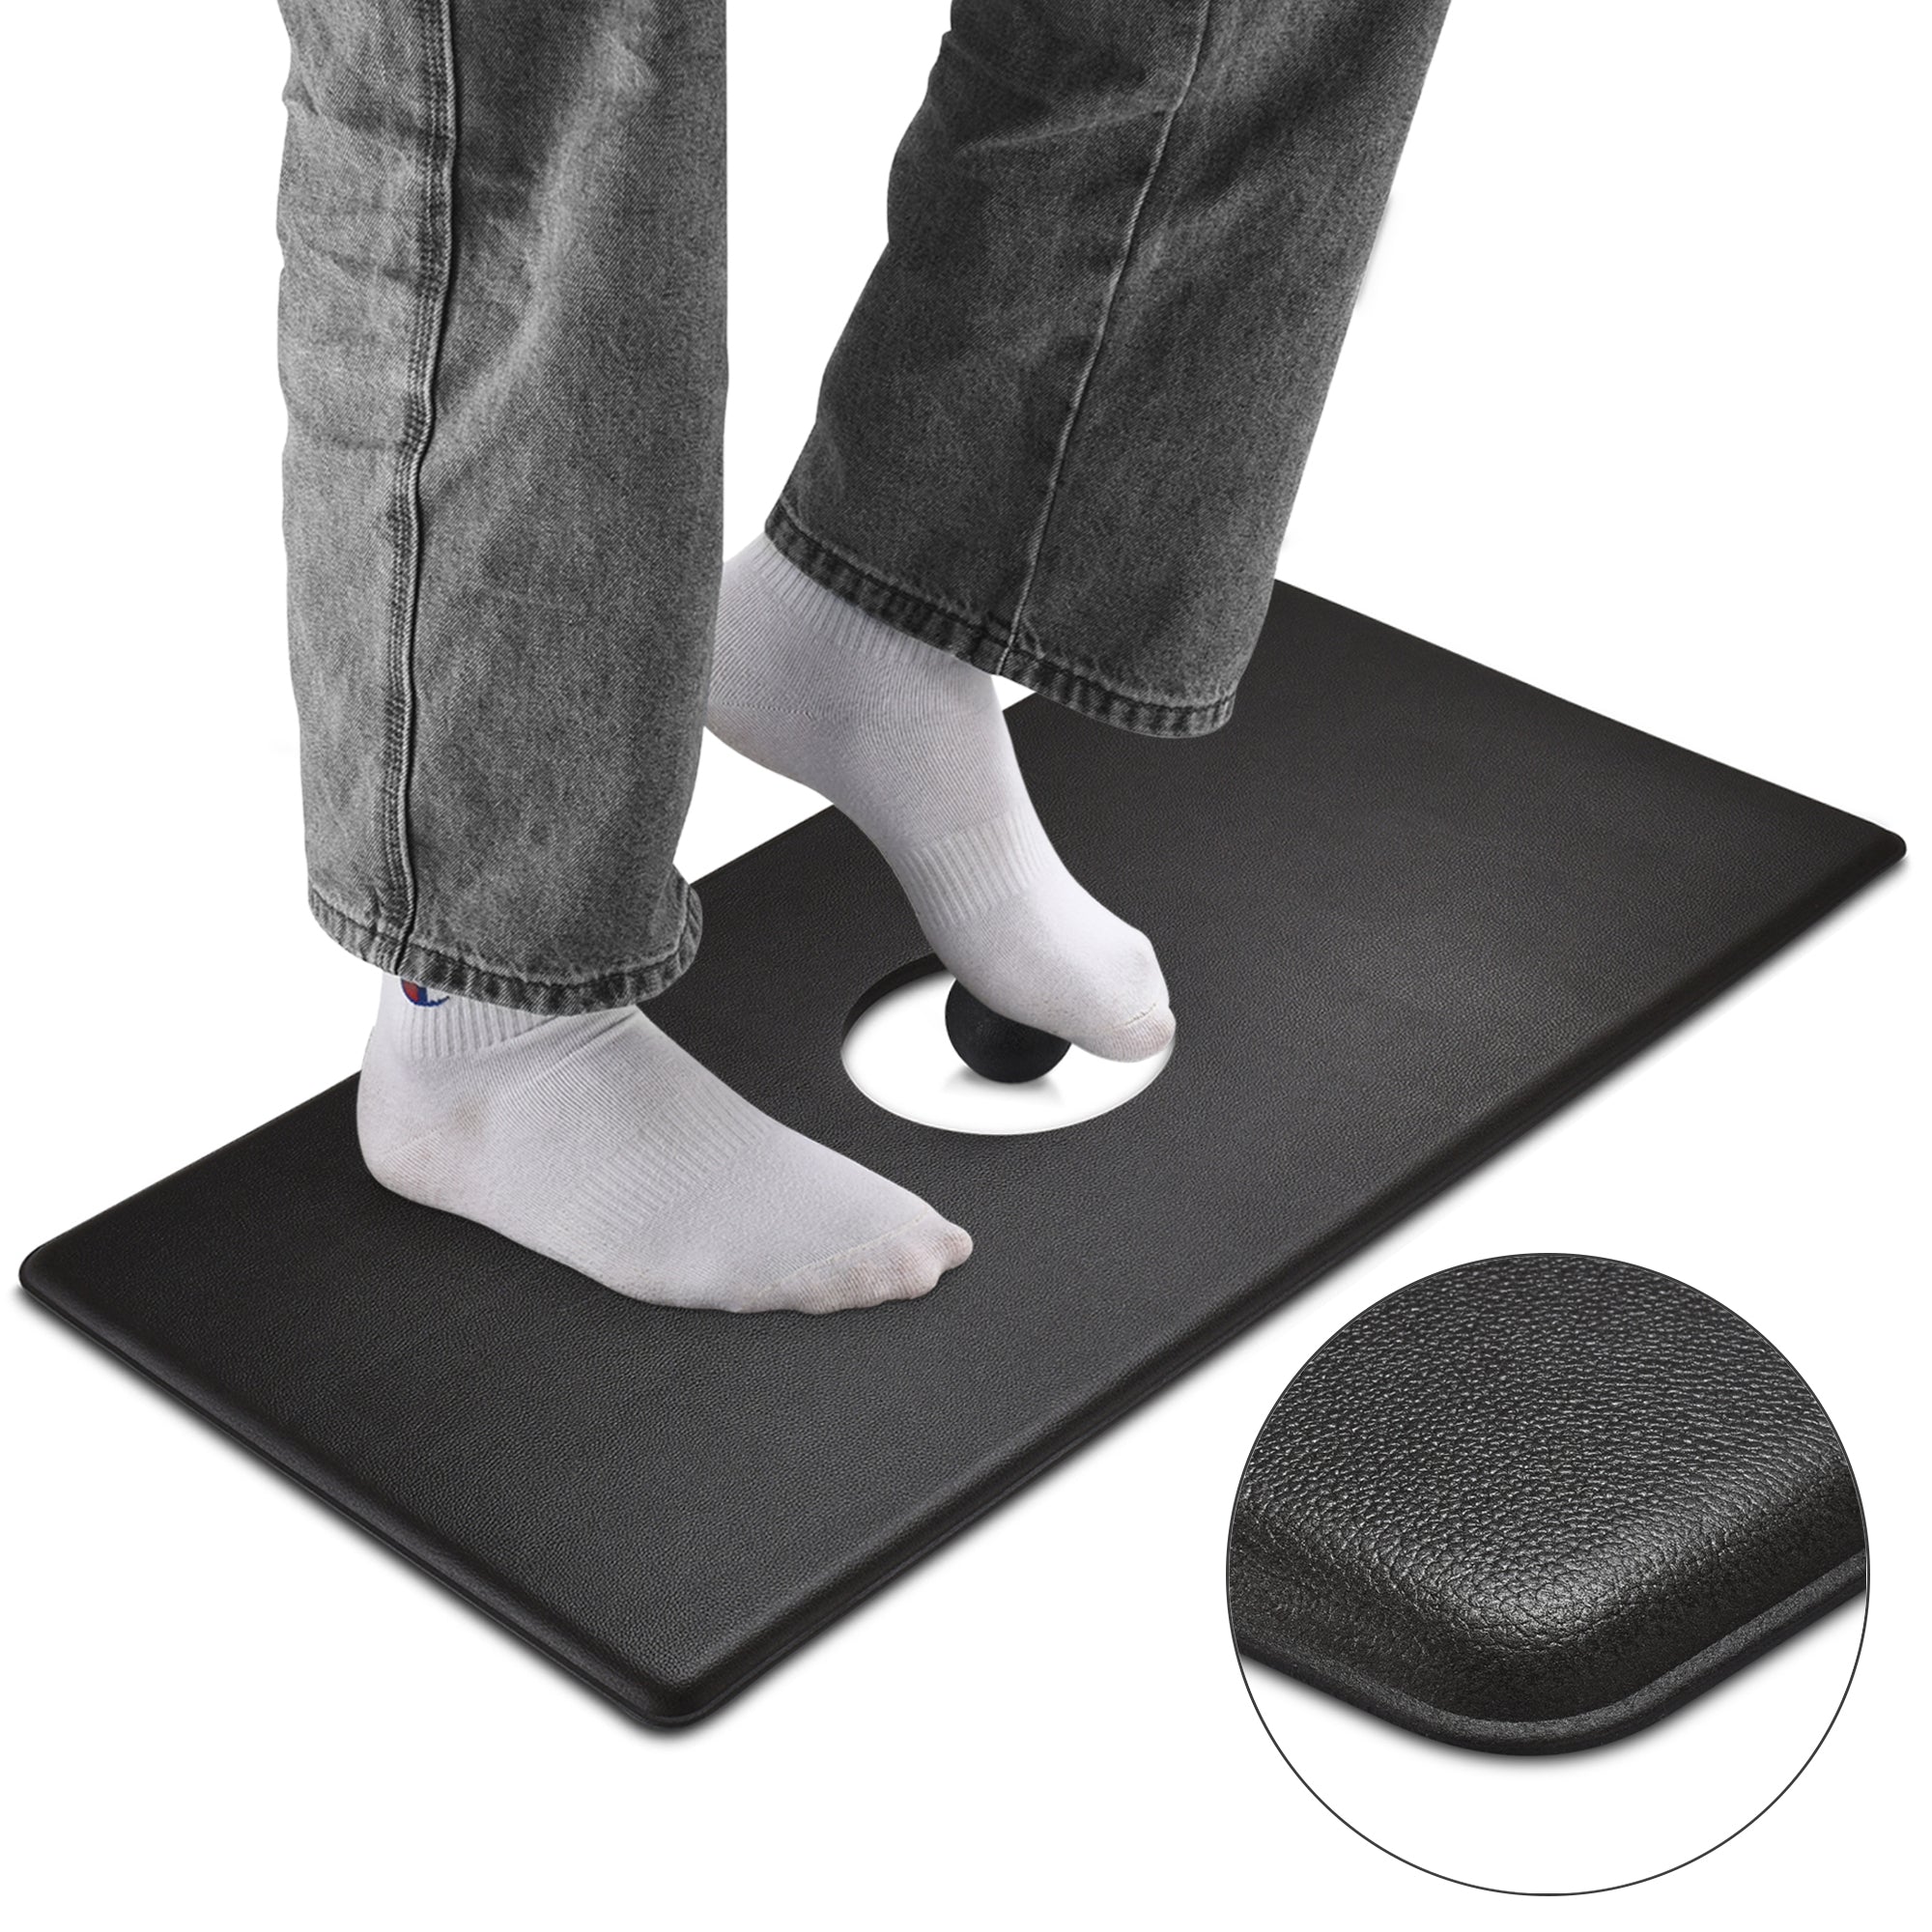 Costway Anti Fatigue Standing Desk Mat w/ Massage Roller Ball Foot Massage  Points Office